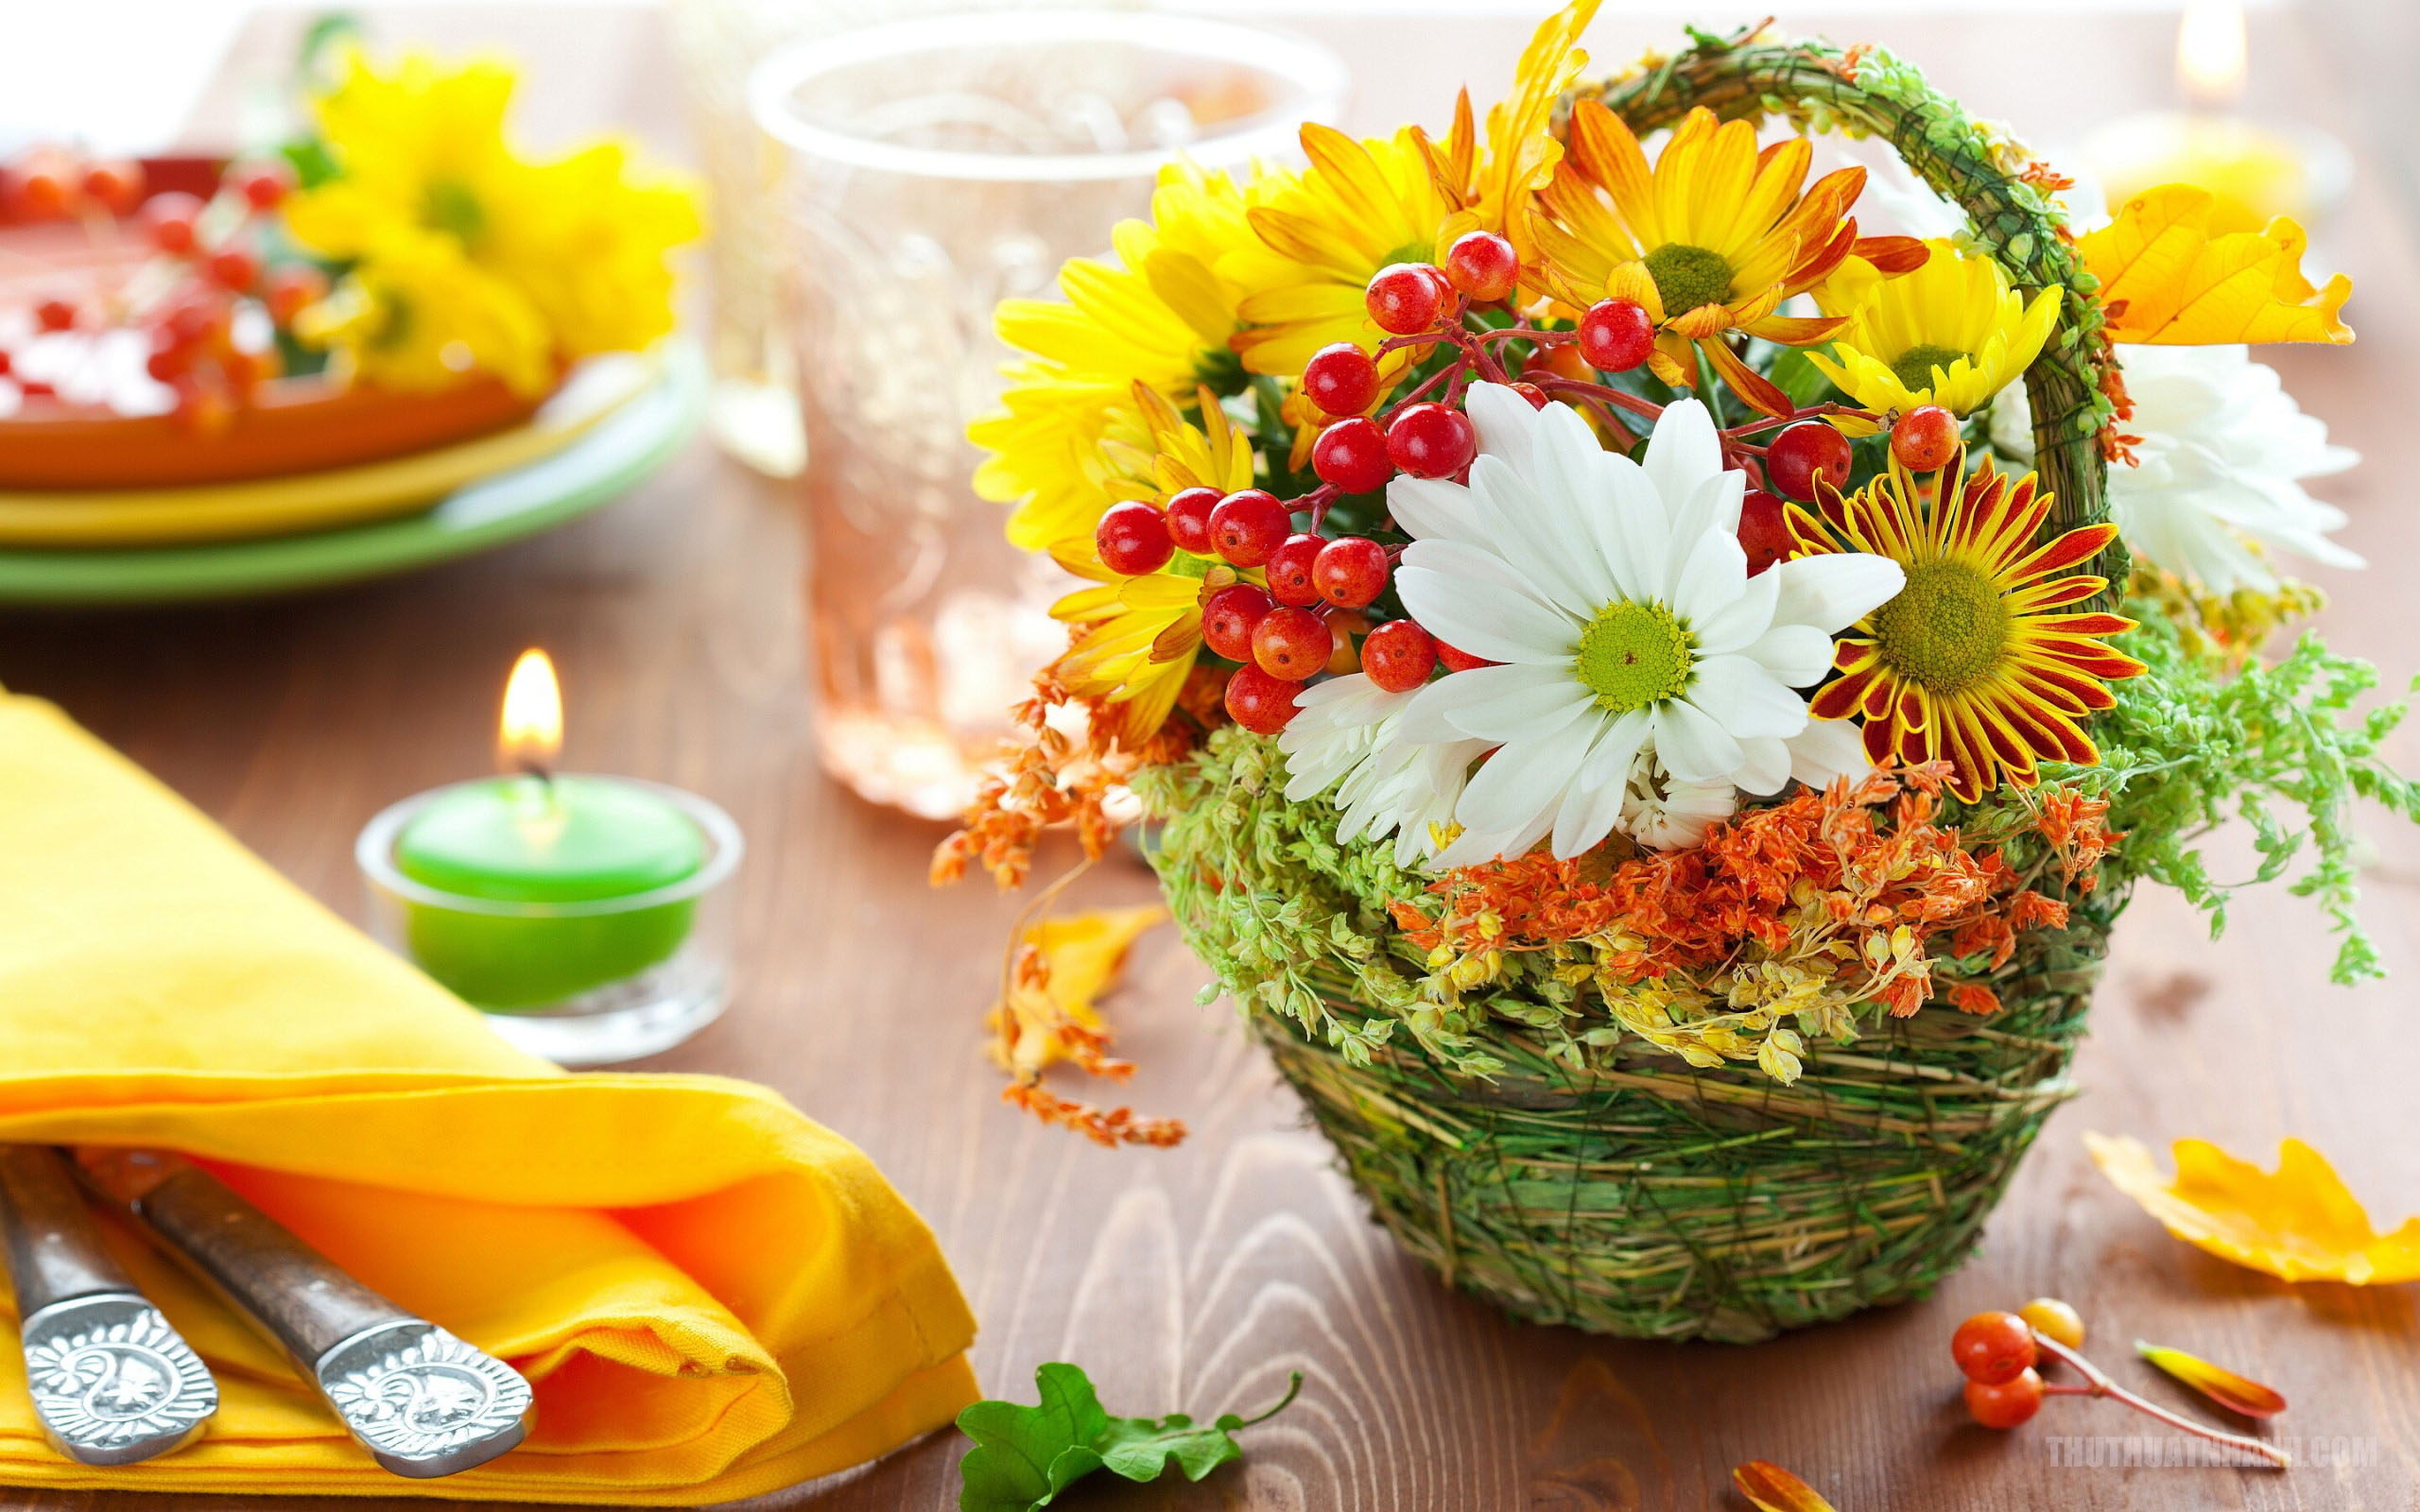 Lẵng hoa lễ: Lẵng hoa lễ là món quà ý nghĩa nhất để tôn vinh sự kiện đặc biệt của bạn. Bằng những món quà này, chúng tôi hy vọng sẽ giúp bạn tạo ra một bầu không khí lễ hội thật rực rỡ và đầy ấn tượng.